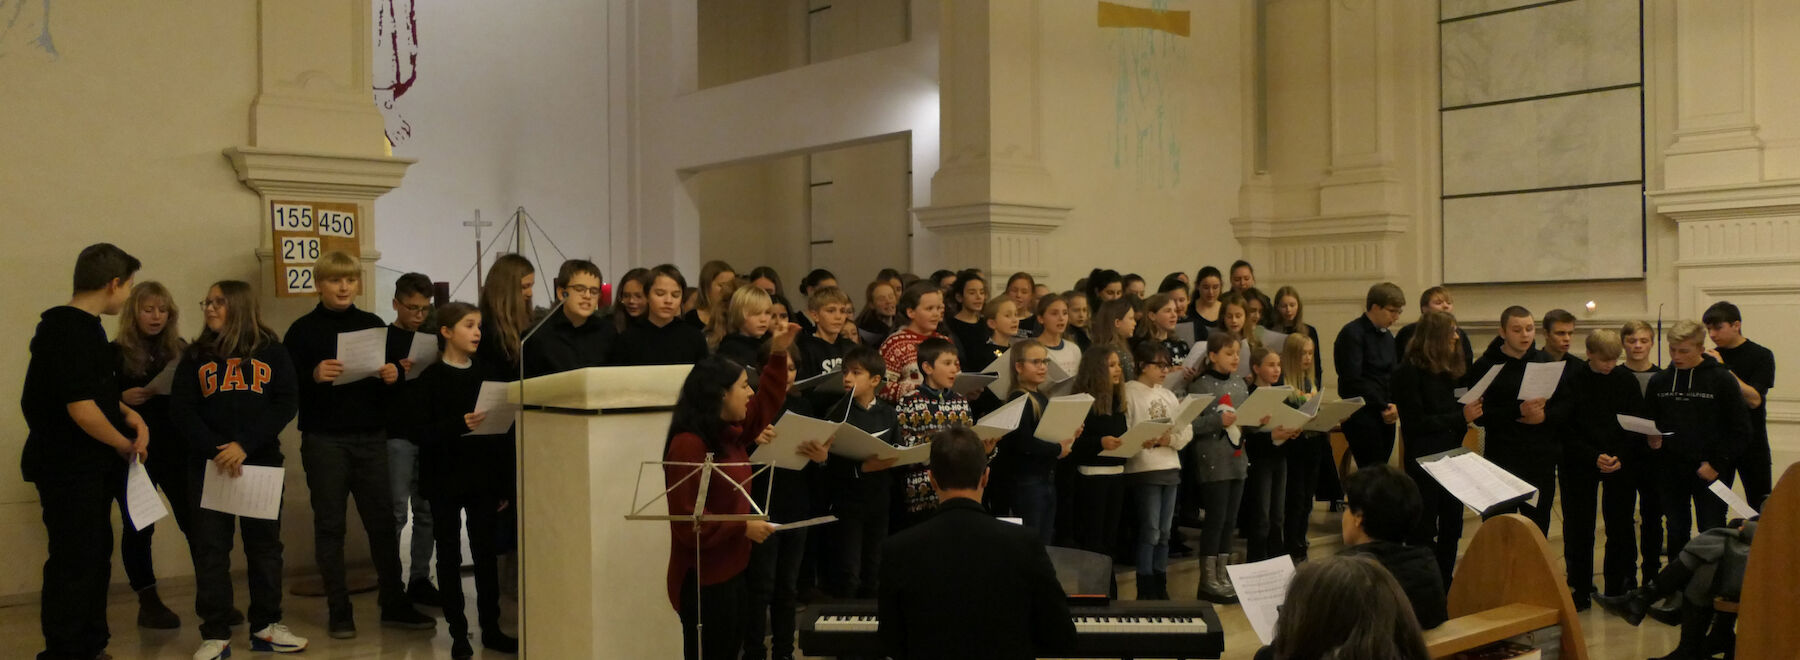 Chorweihnachtsfeier - Unser Singen im Dienst der guten Sache